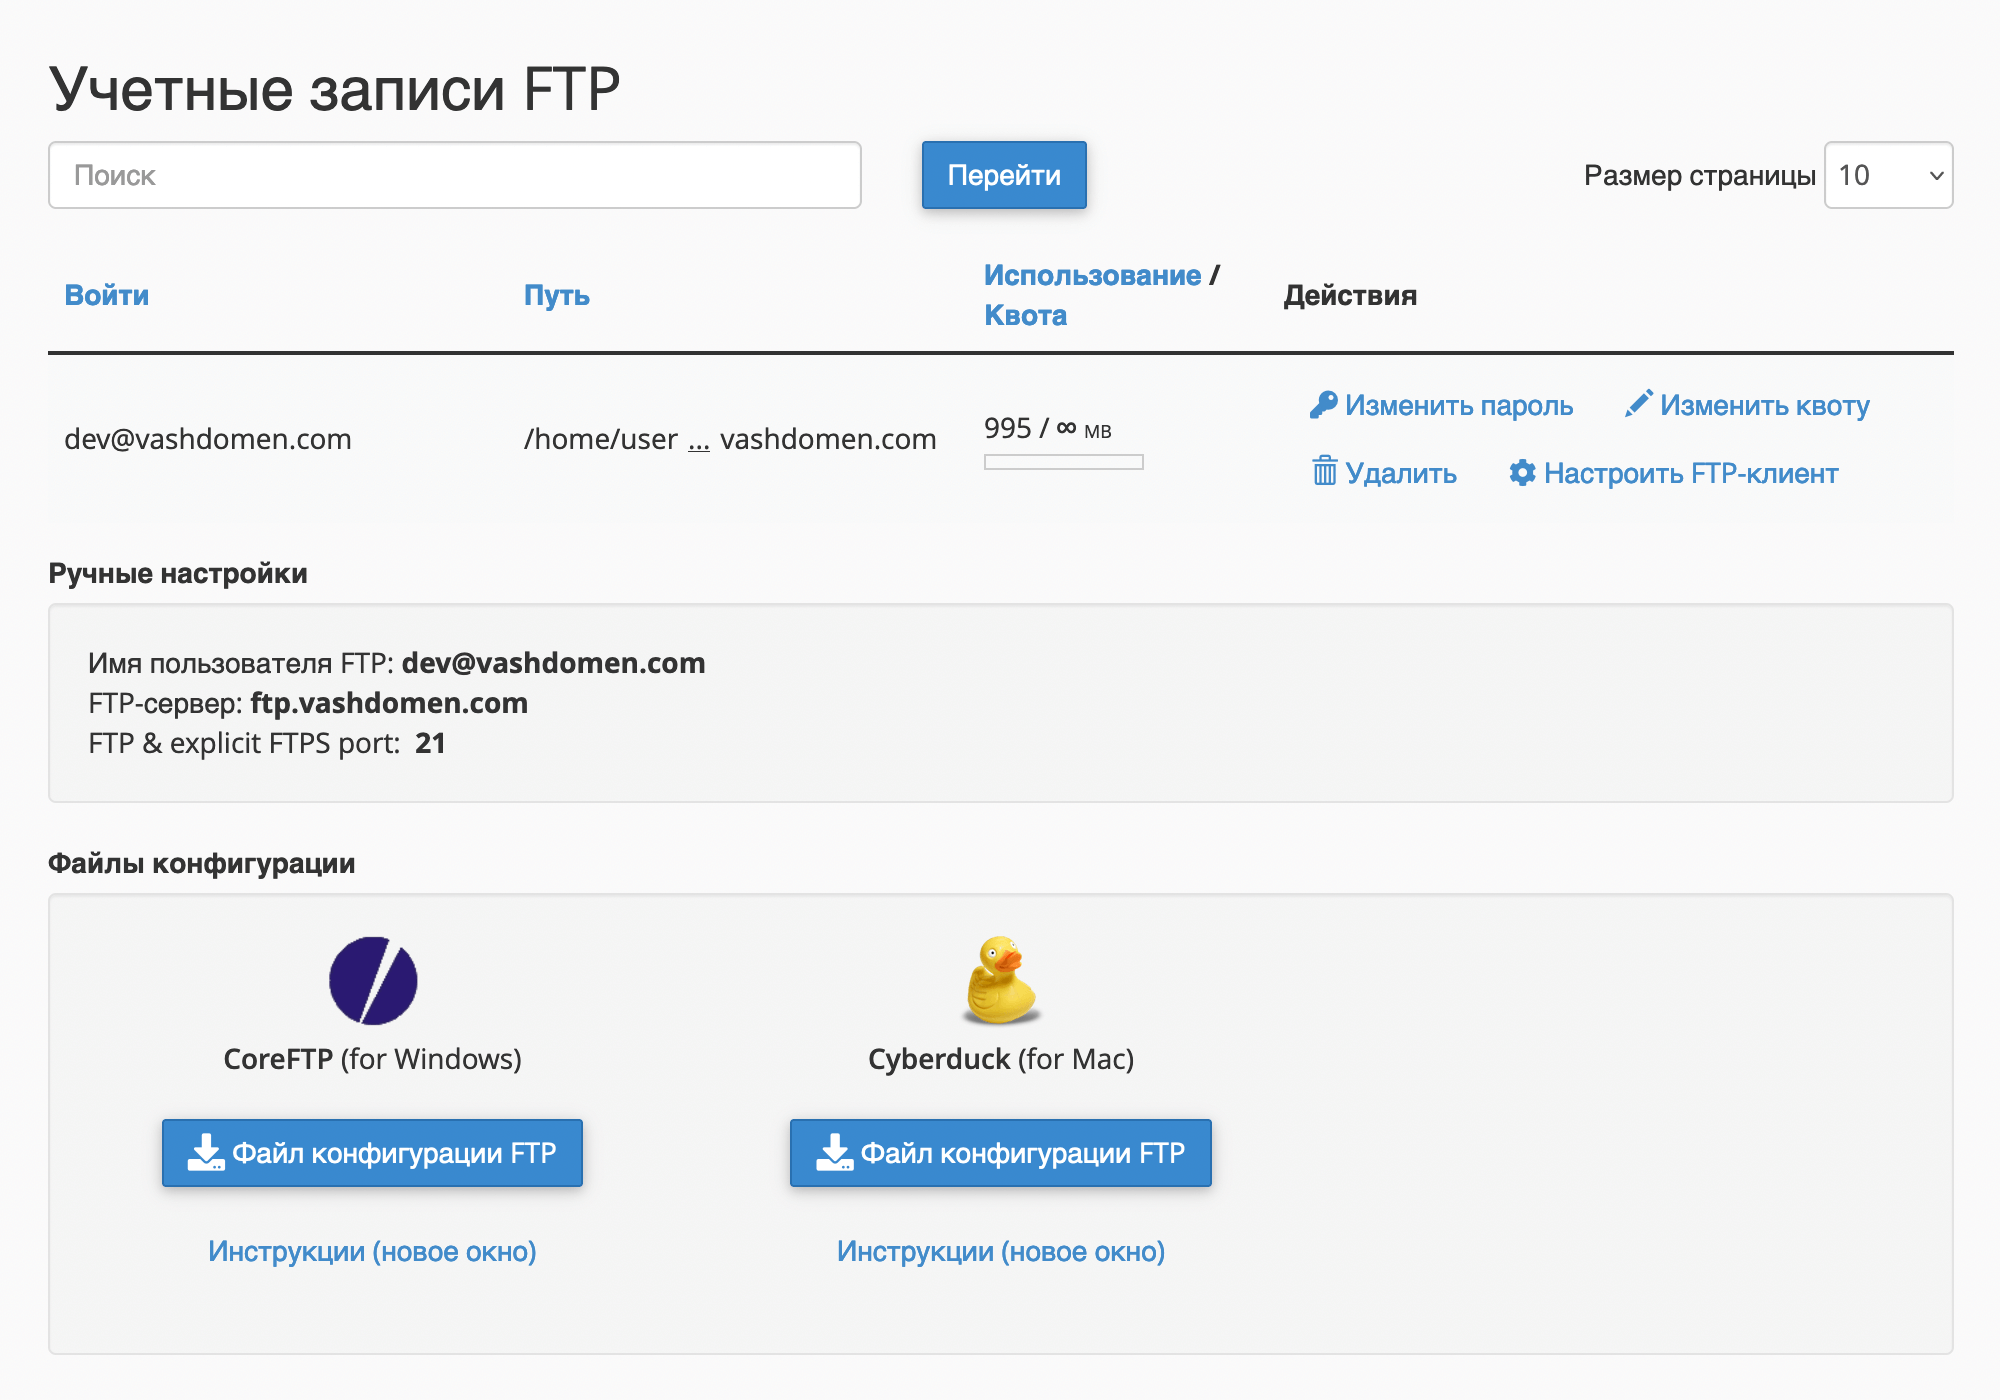 Где найти детали для подключения по FTP в cPanel